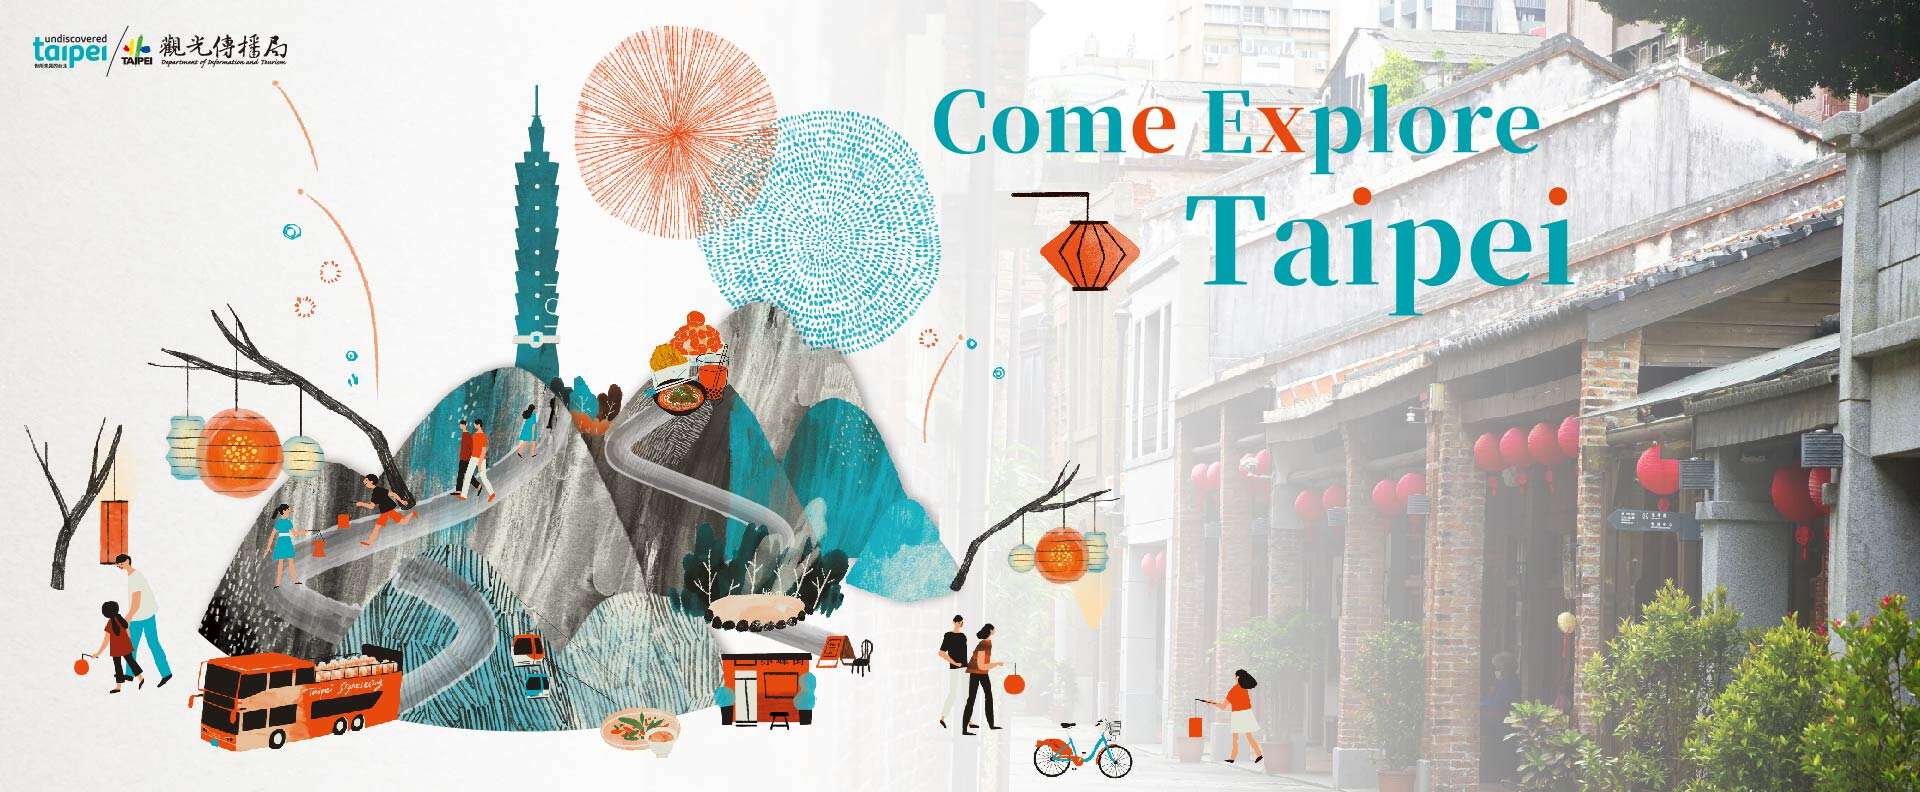 Come Explore Taipei